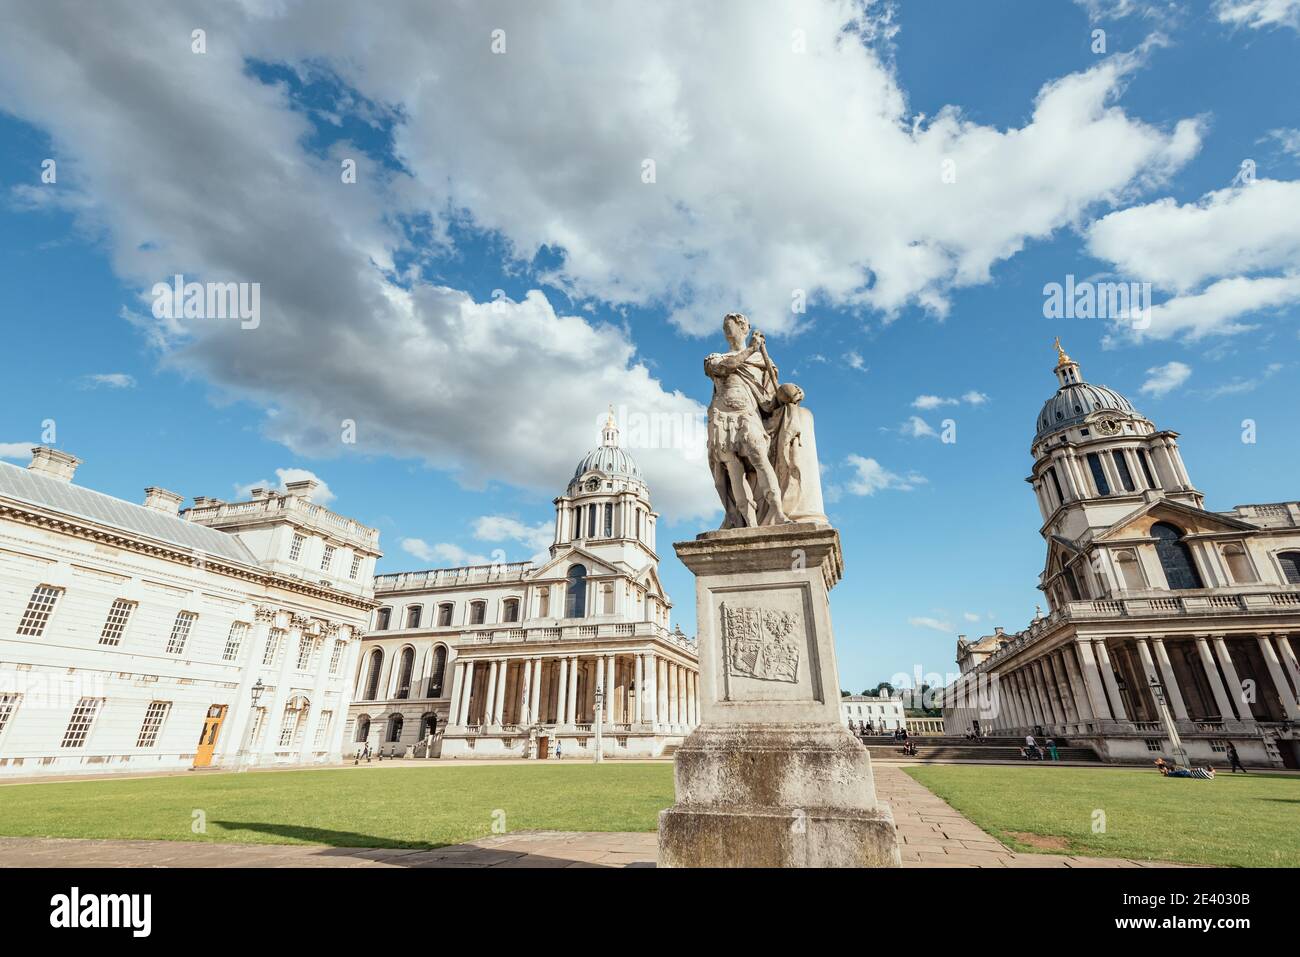 Une statue du roi George II se trouve dans l'Old Royal Naval College, Greenwich, Londres, Angleterre, Royaume-Uni Banque D'Images